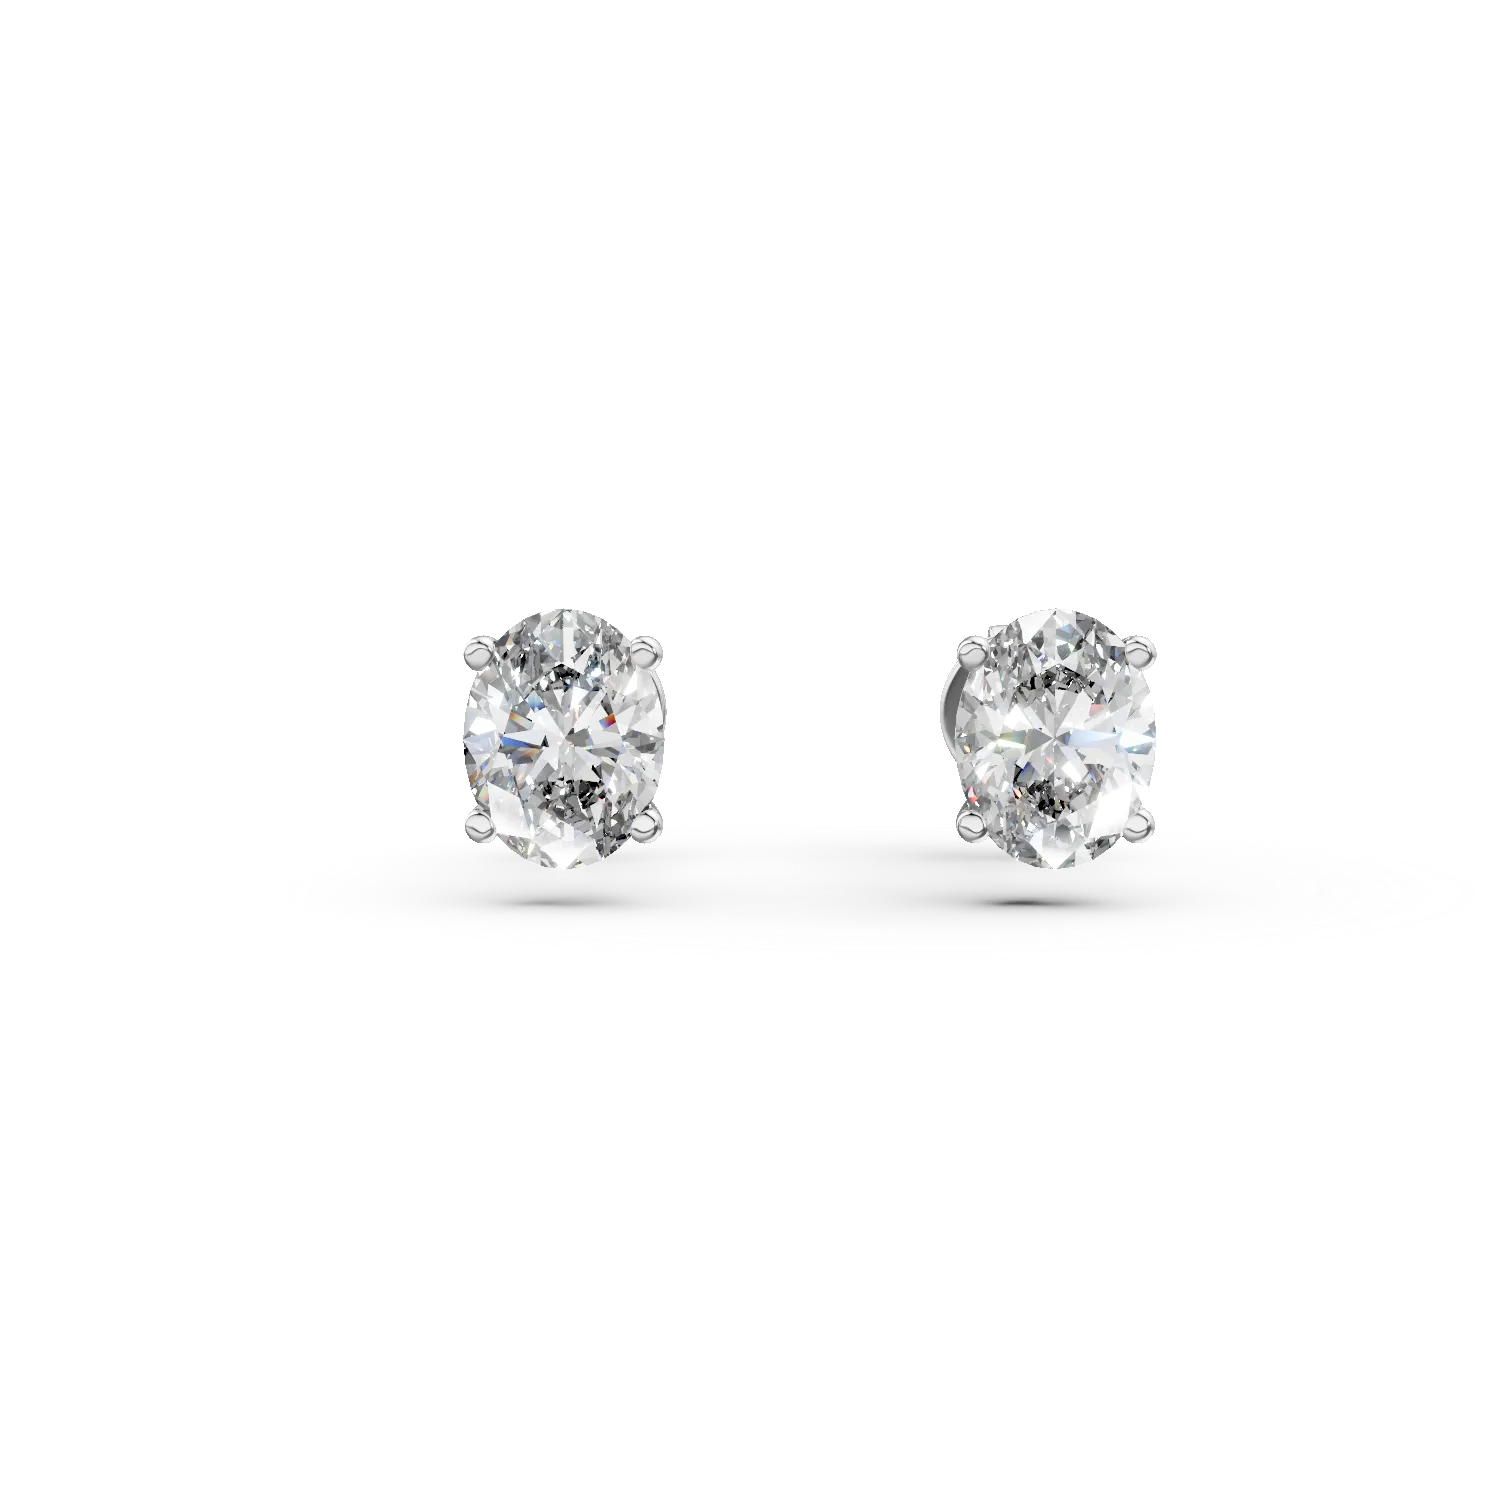 Cercei din aur alb cu diamante solitaire de 0.6ct create in laborator, taietura ovala